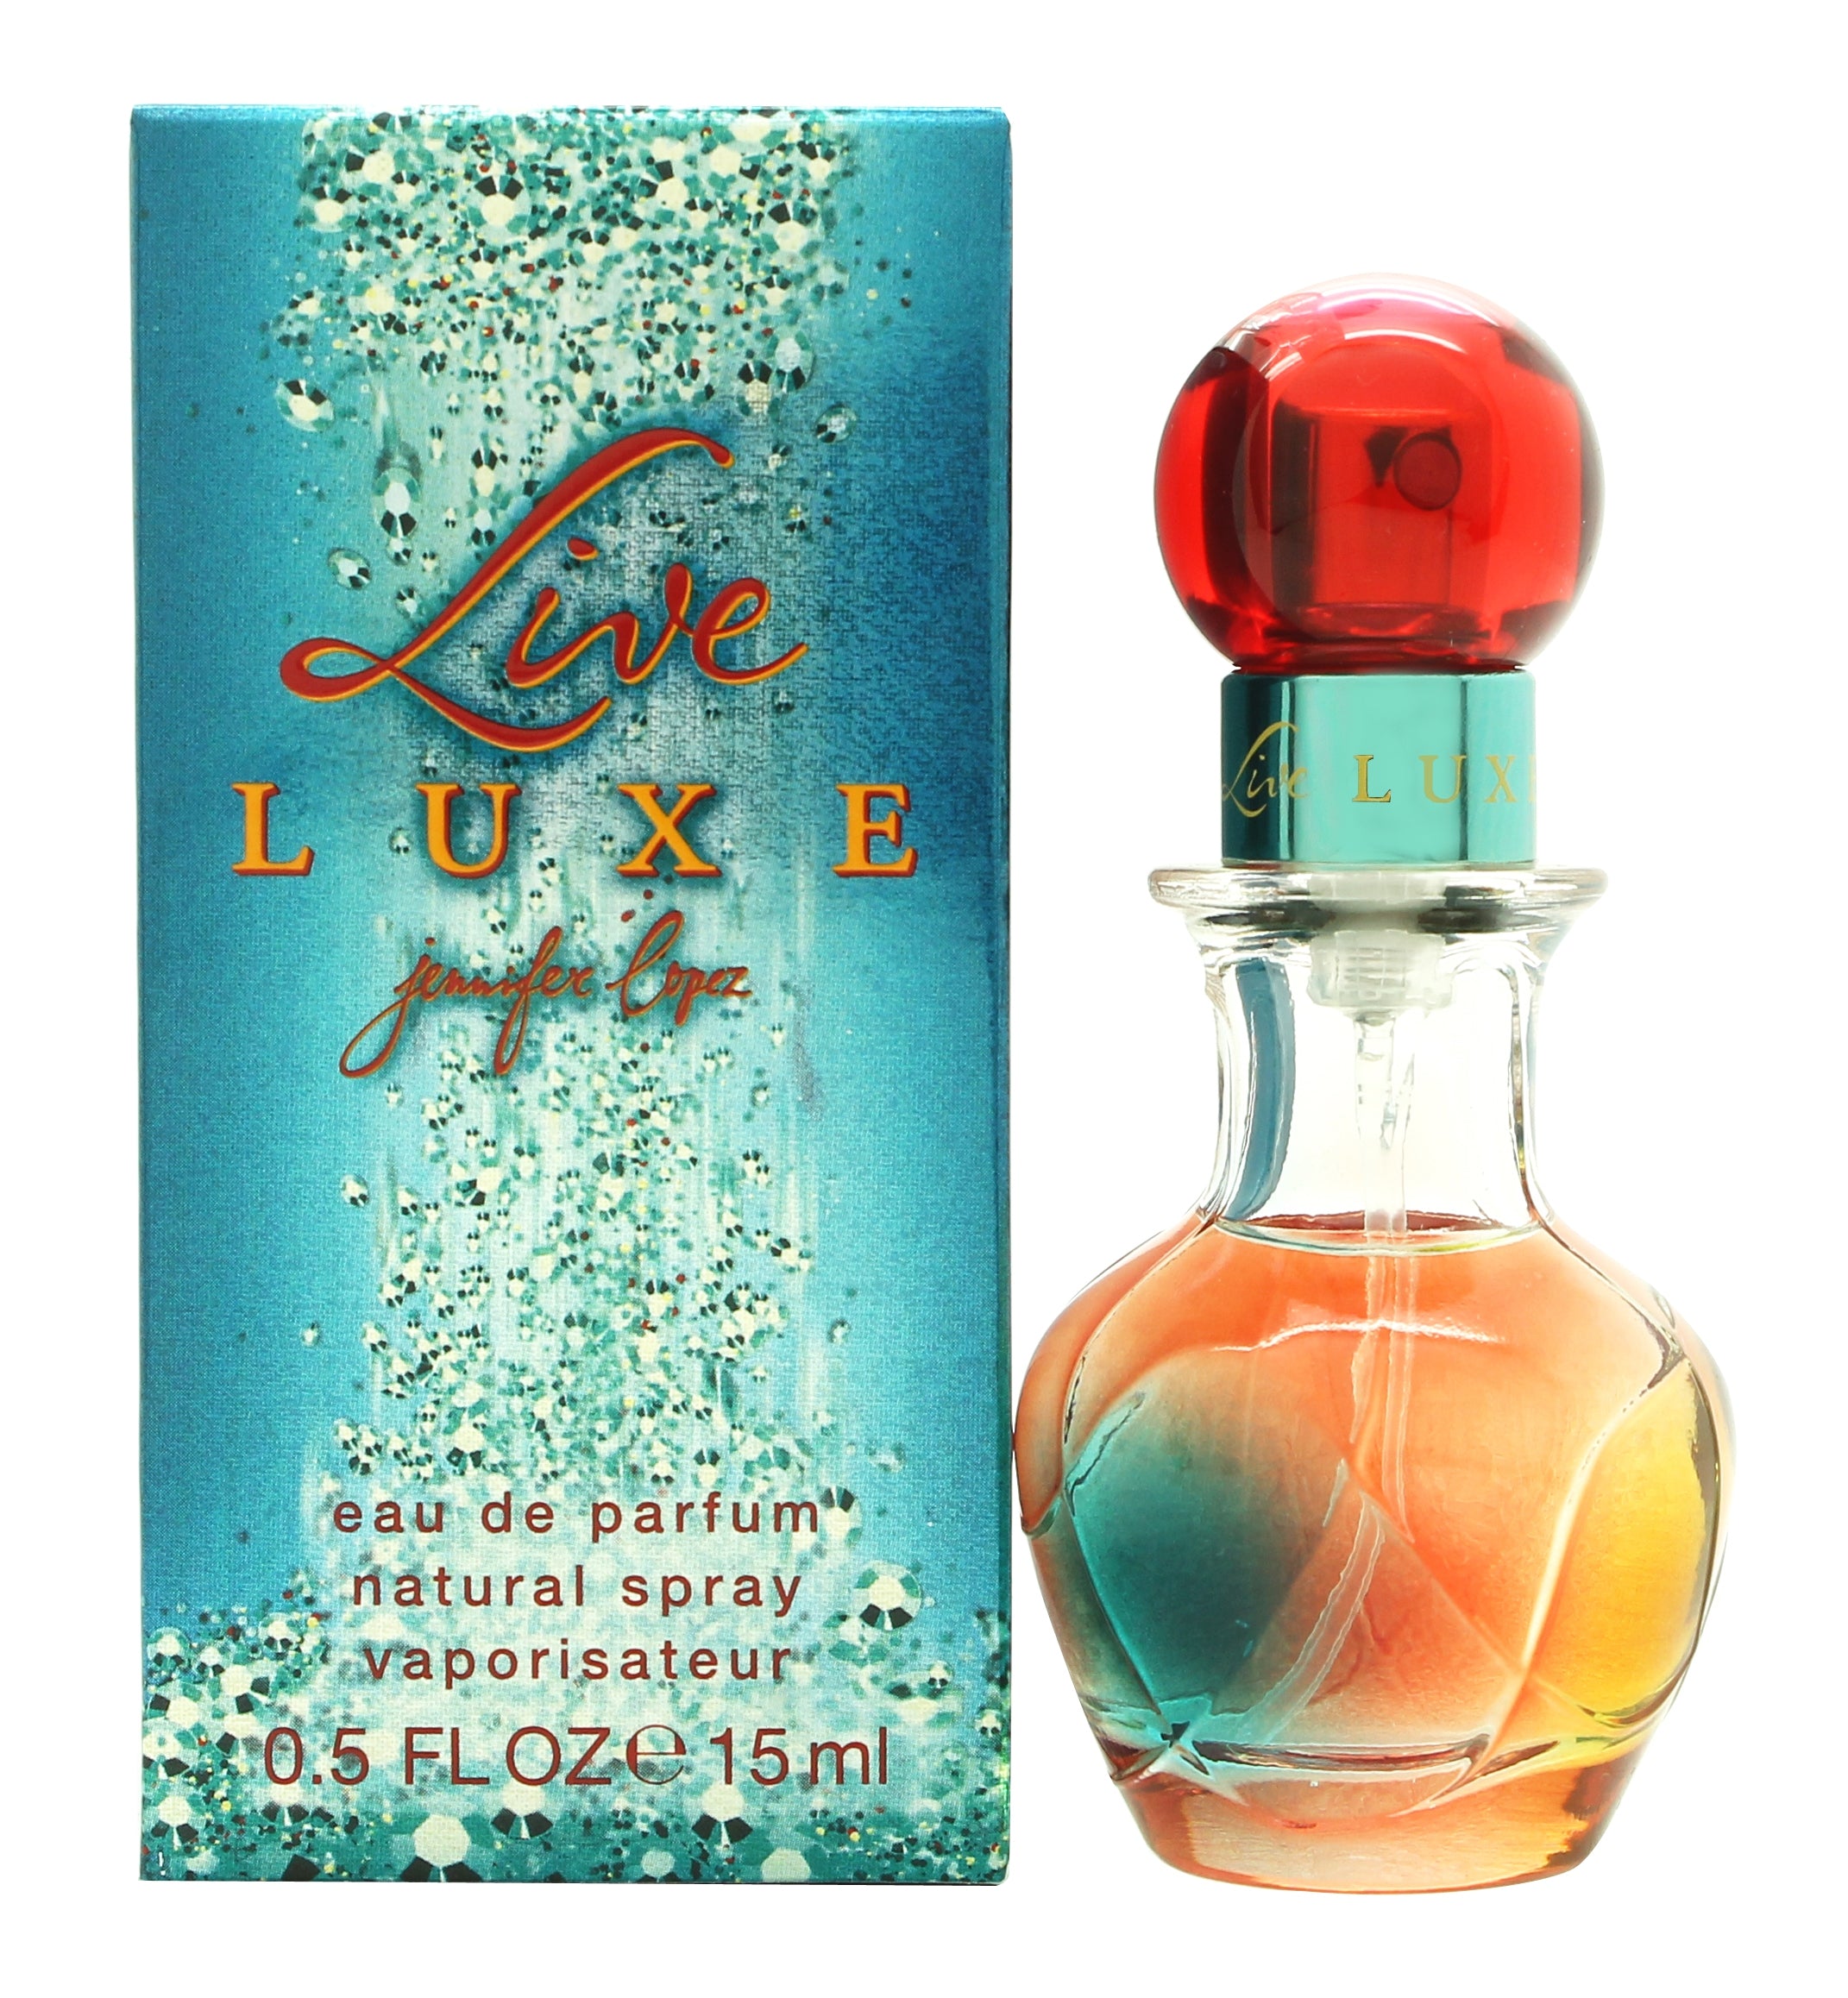 View Jennifer Lopez Live Lux Eau de Parfum 15ml Spray information